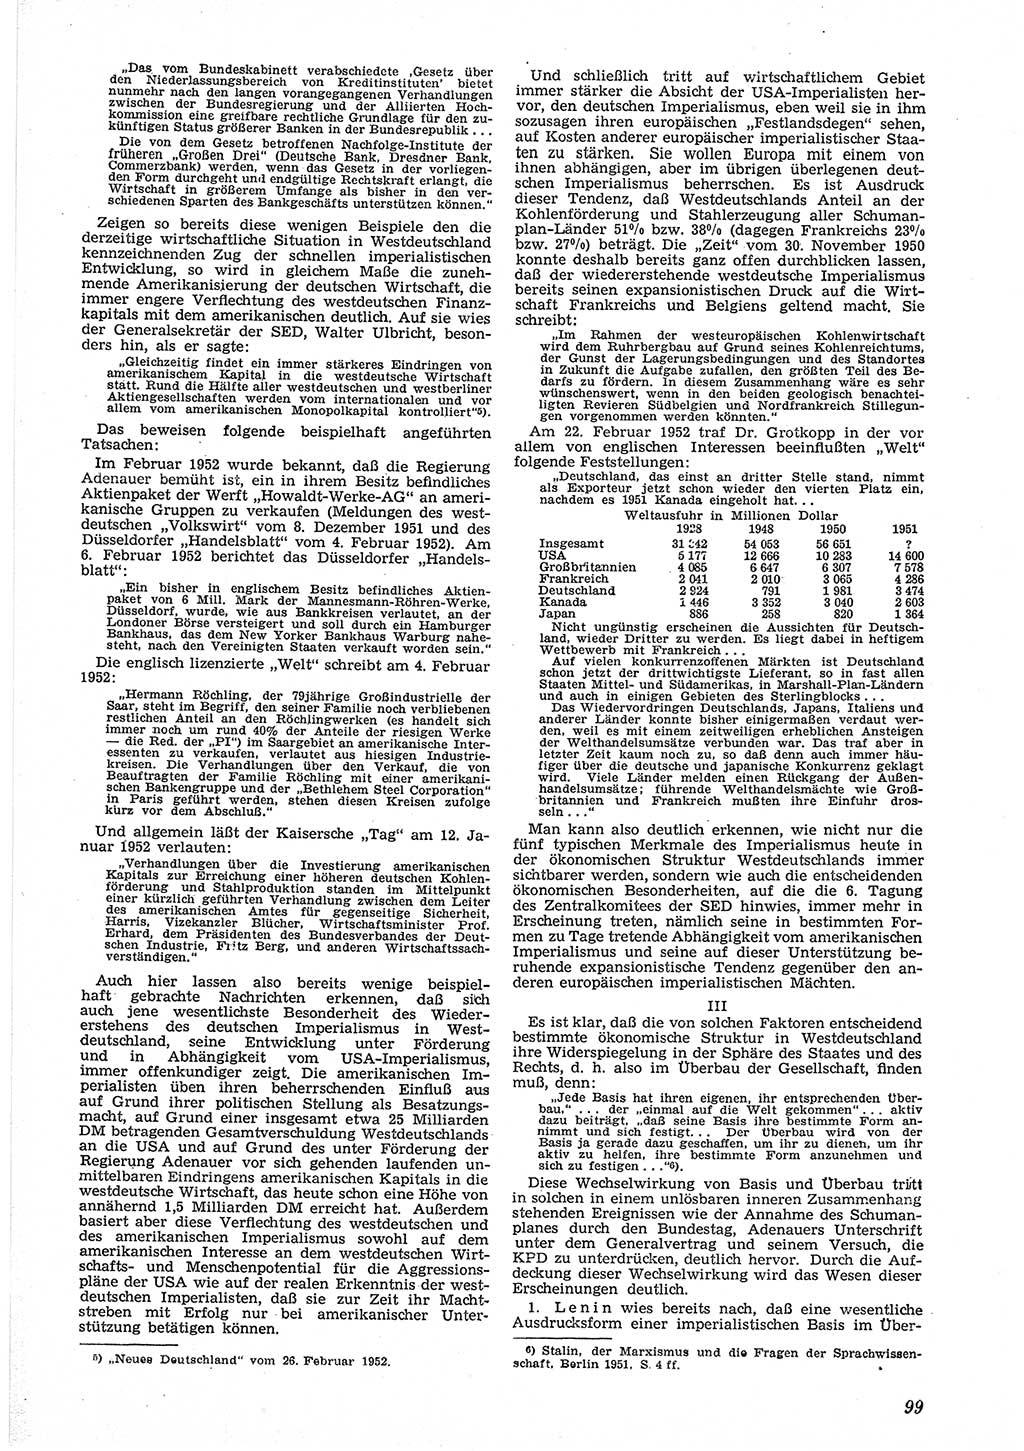 Neue Justiz (NJ), Zeitschrift für Recht und Rechtswissenschaft [Deutsche Demokratische Republik (DDR)], 6. Jahrgang 1952, Seite 99 (NJ DDR 1952, S. 99)